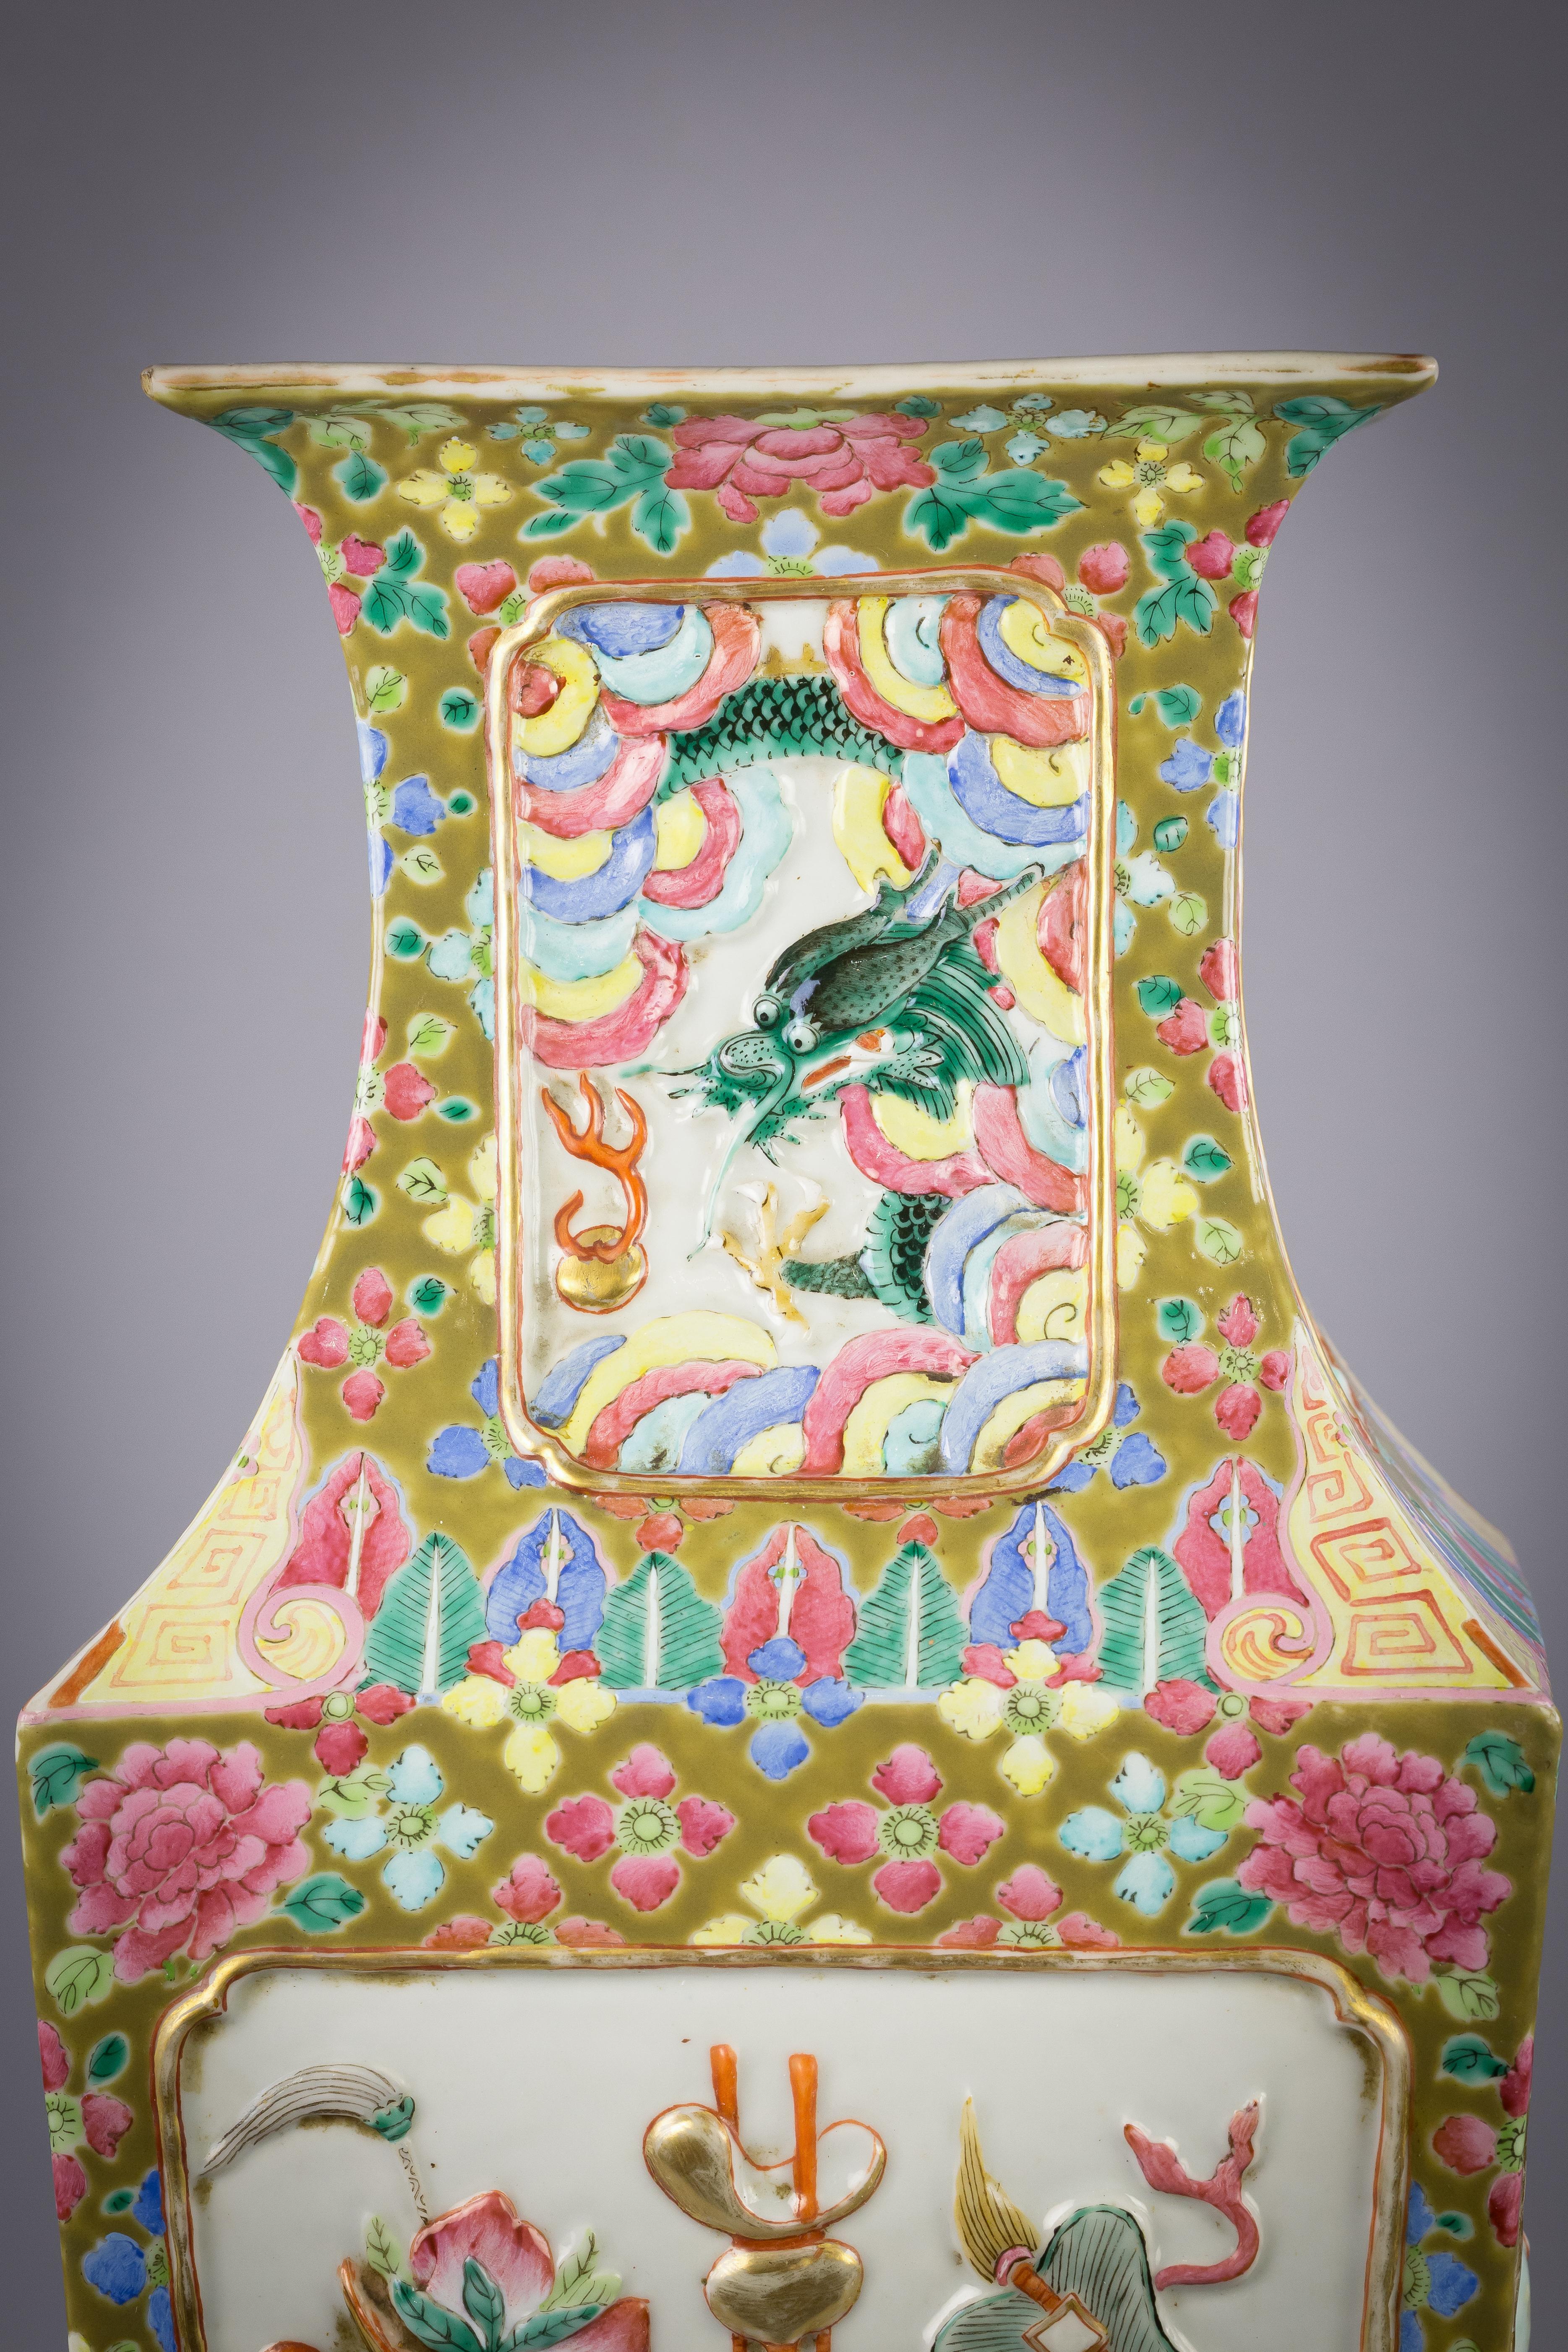 Chinesische Porzellan-Mandarinen-Palettenvase, um 1860

Mit geformten Emblemen.